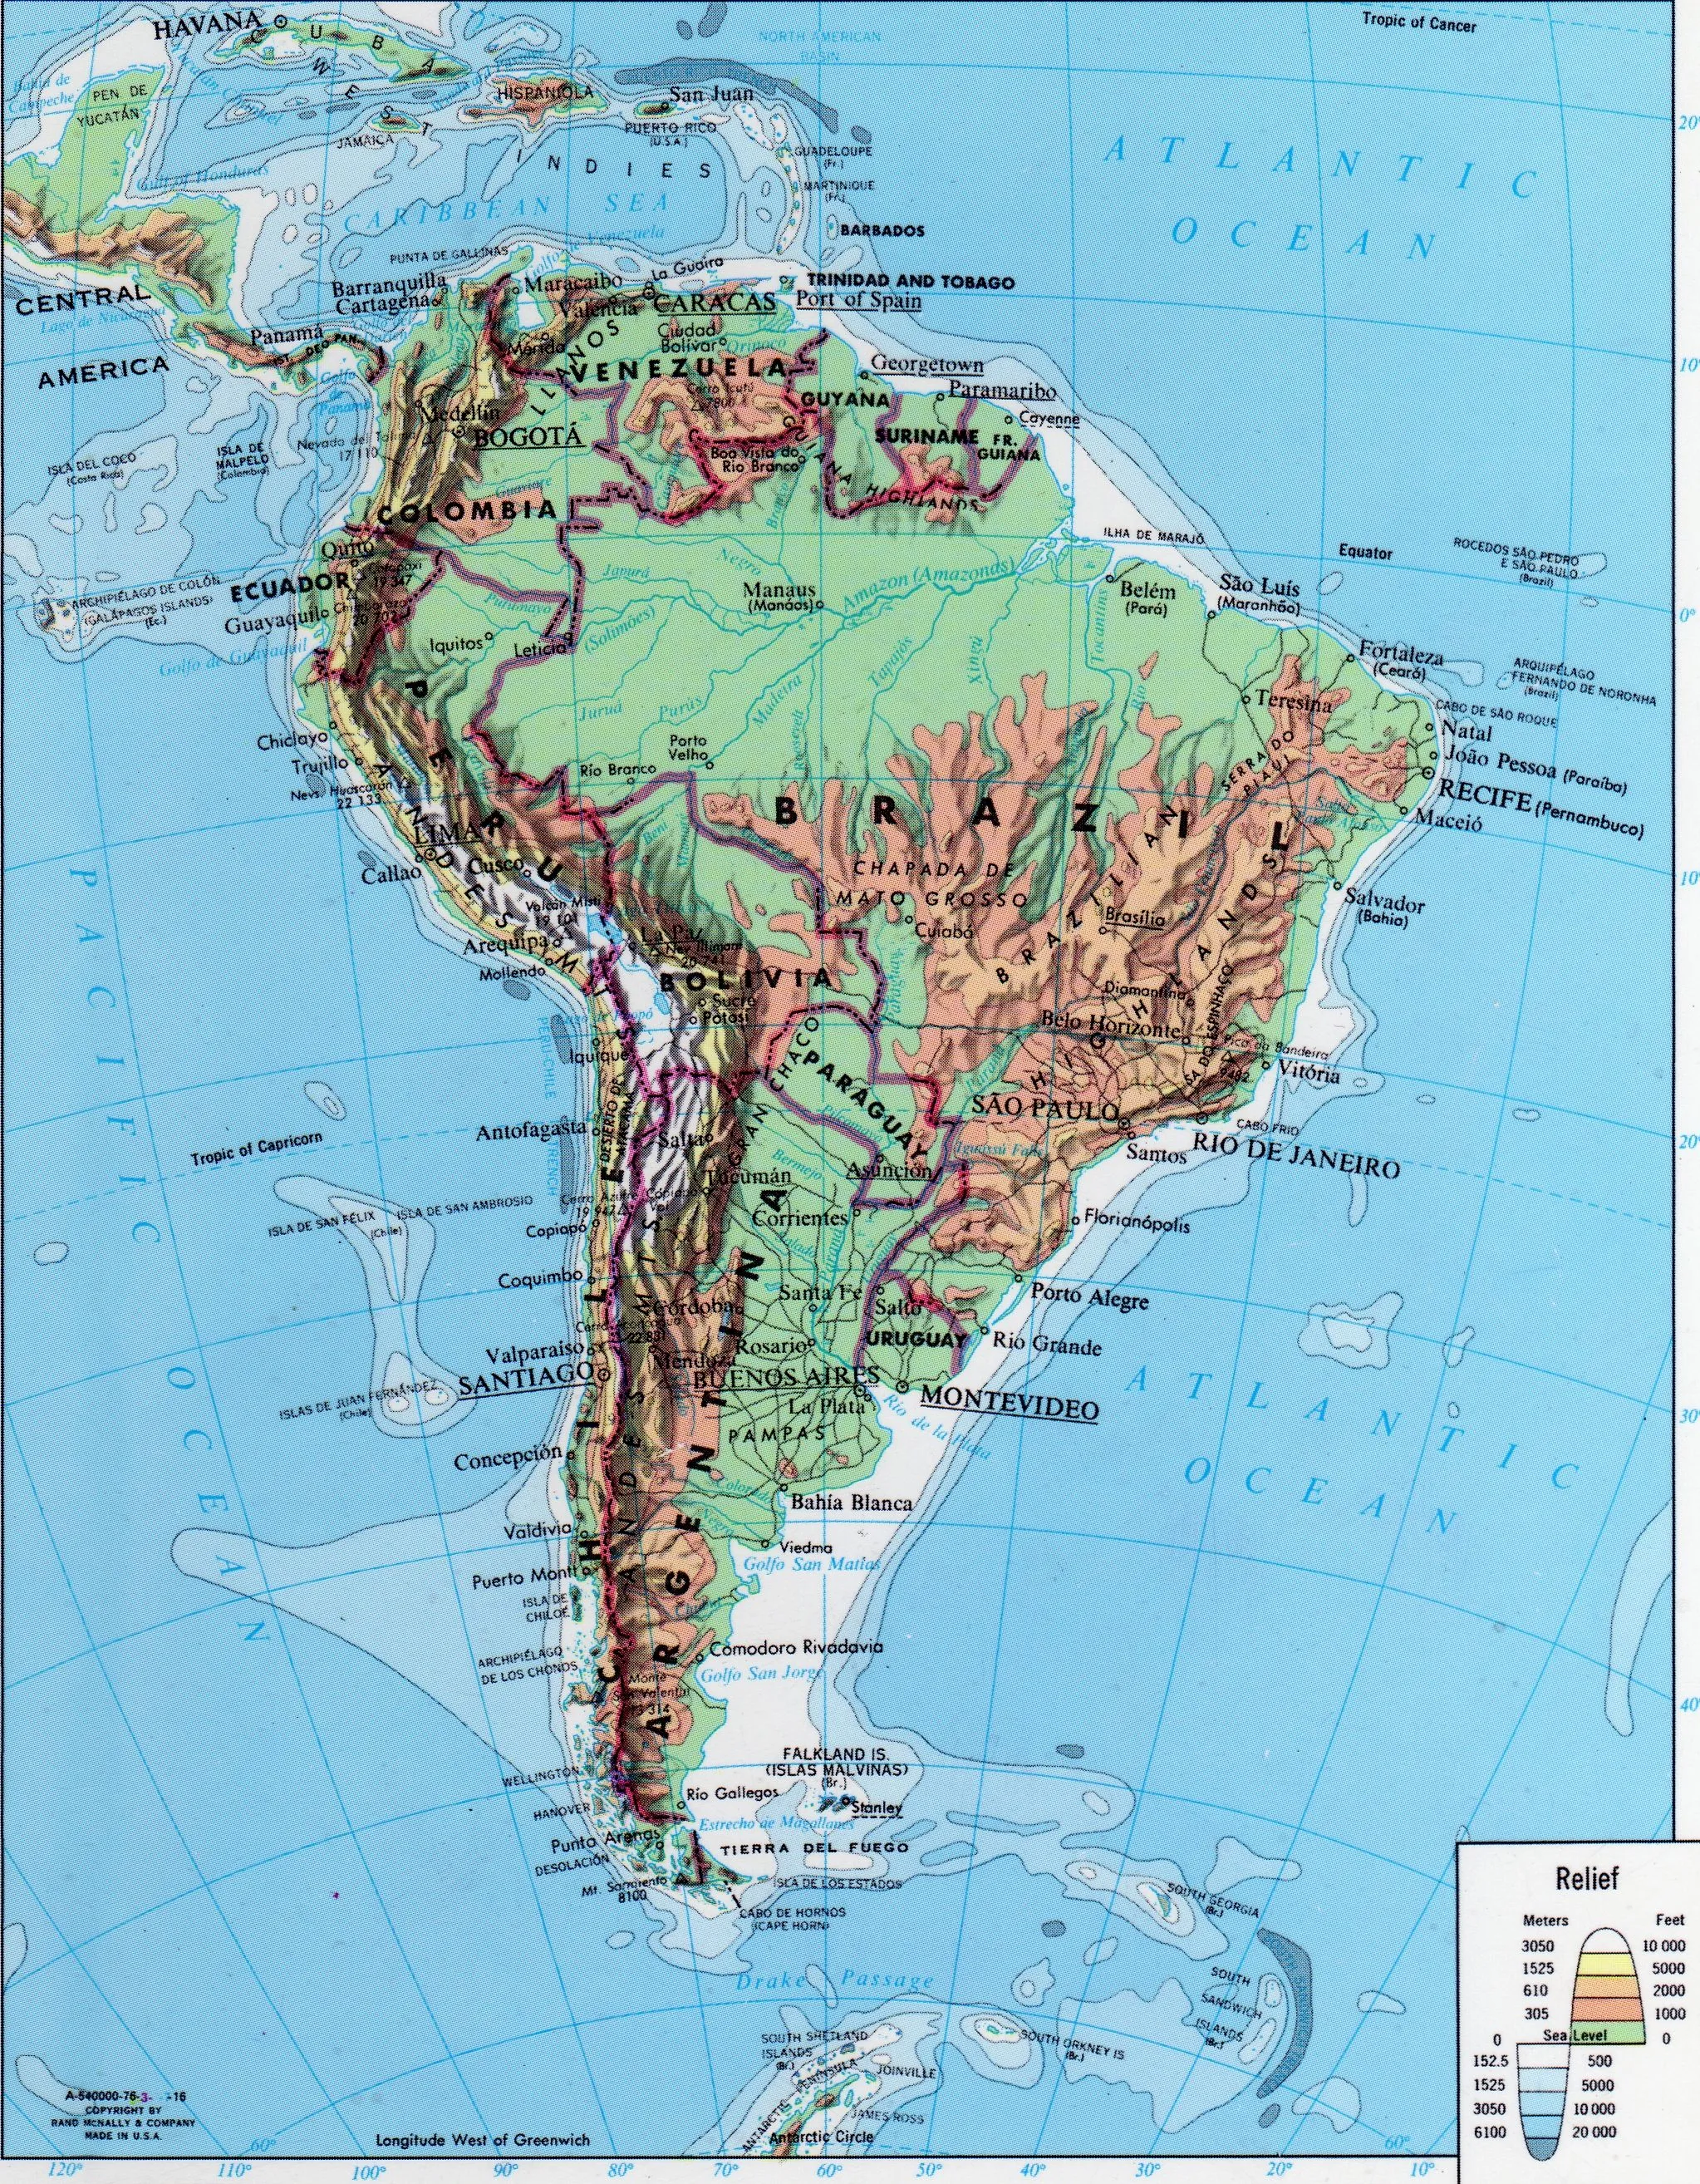 Mapa Físico de América del Sur - Tamaño completo